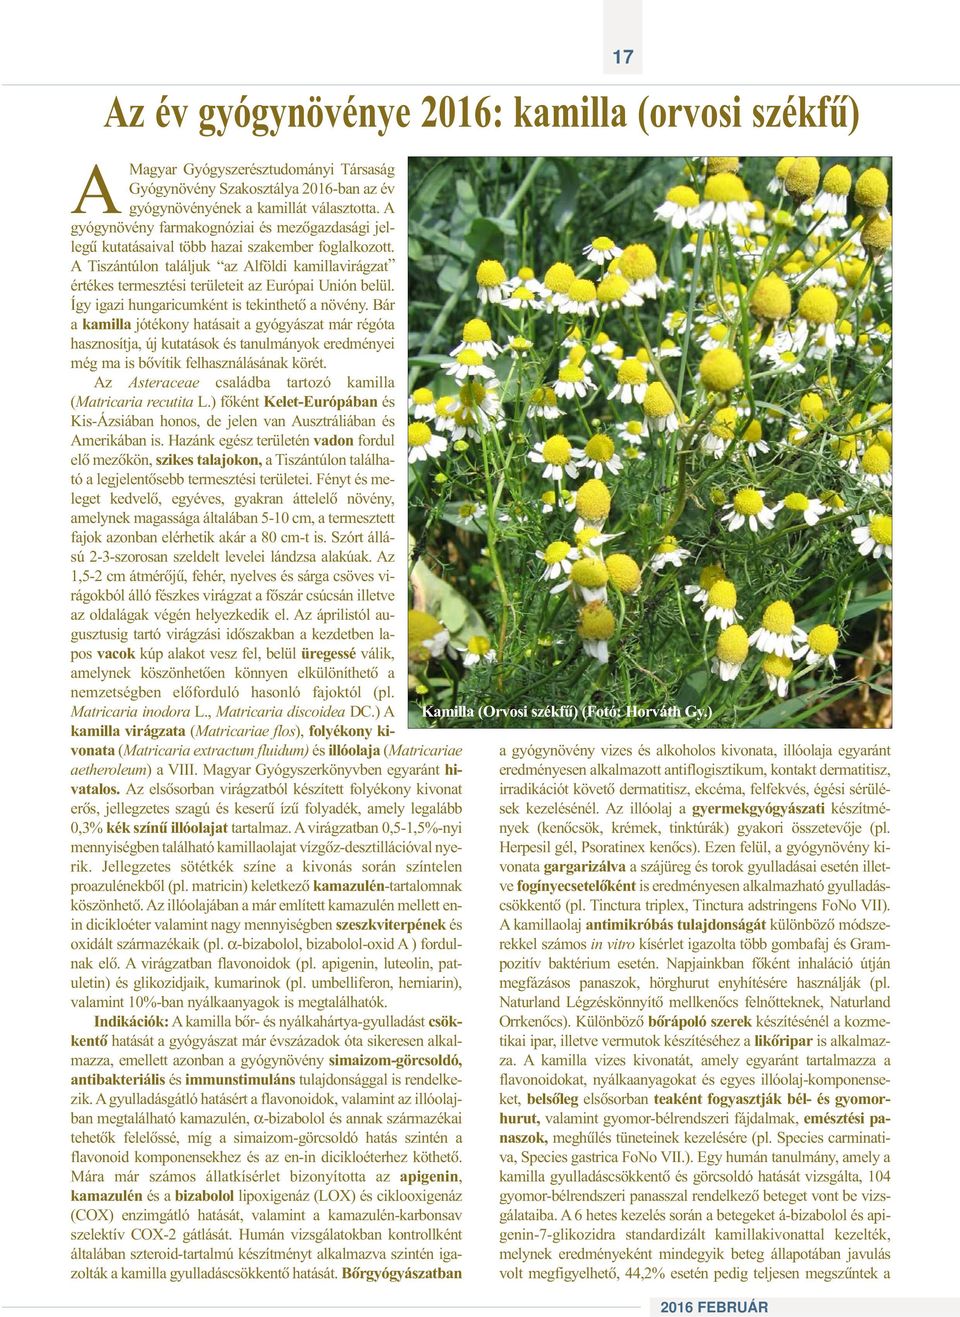 A Tiszántúlon találjuk az Alföldi kamillavirágzat értékes termesztési területeit az Európai Unión belül. Így igazi hungaricumként is tekinthetõ a növény.